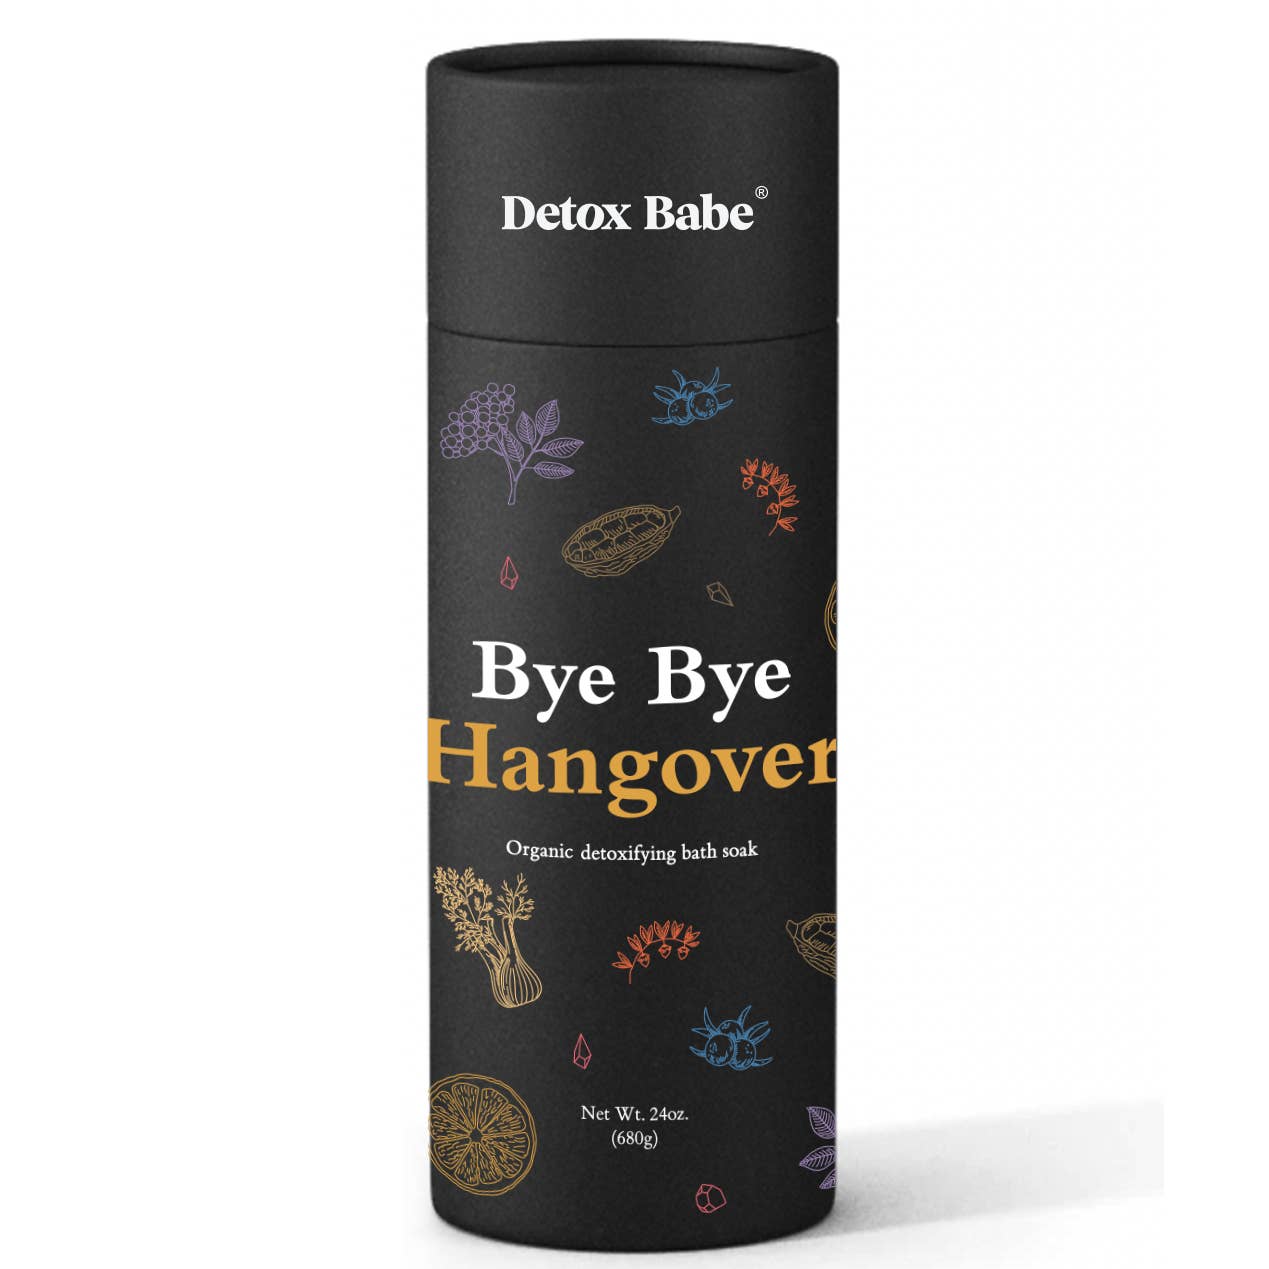 Detox Babe - Bye Bye Hangover Bath Soak (24 oz)